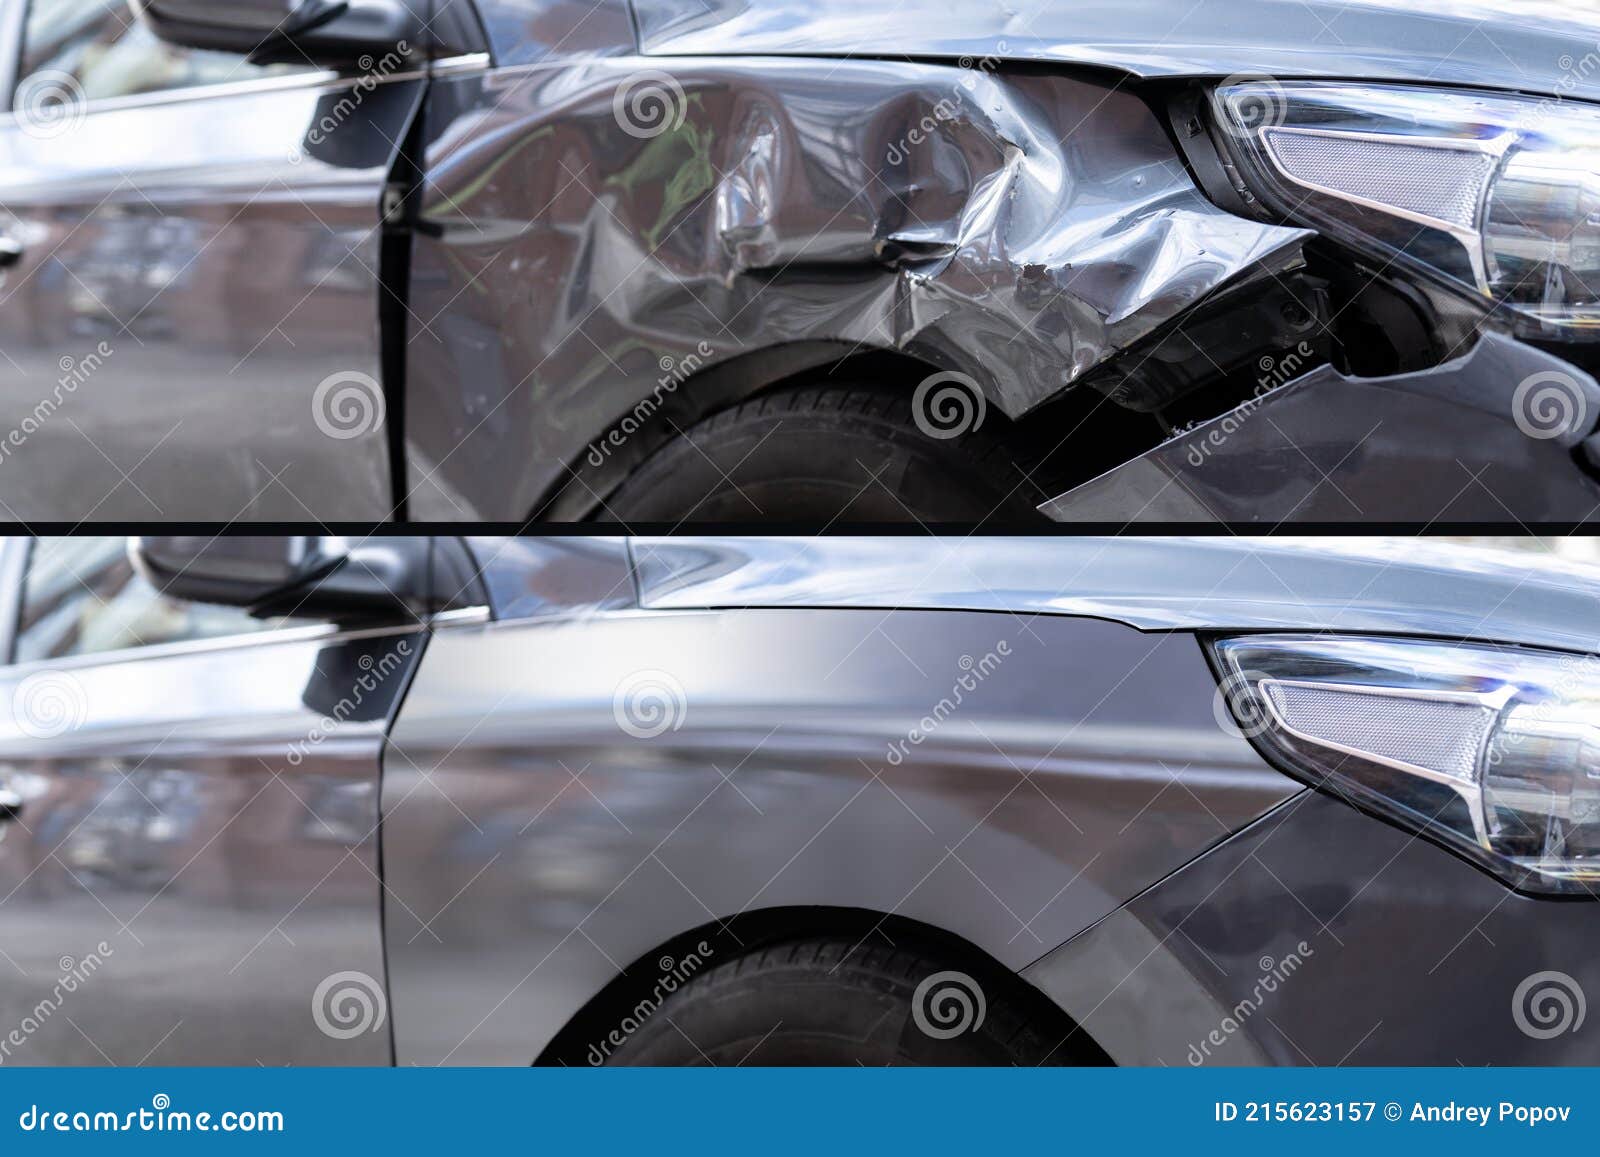 Foto Von Auto Dellen Reparatur Vor Stockbild - Bild von brasilien